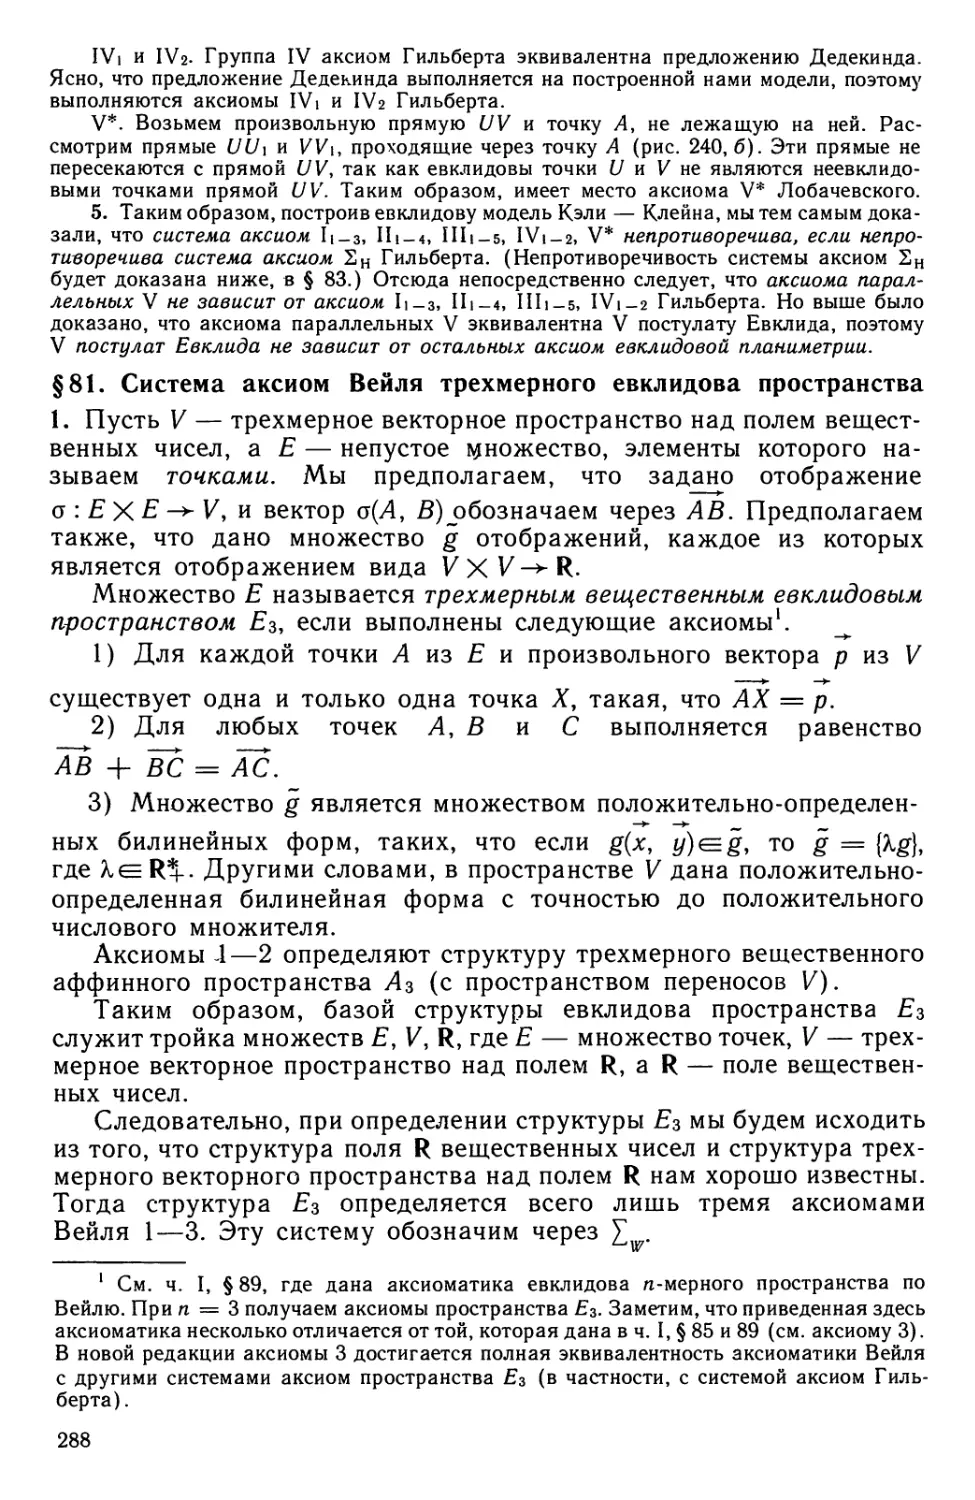 § 81. Система аксиом Вейля трехмерного евклидова пространства